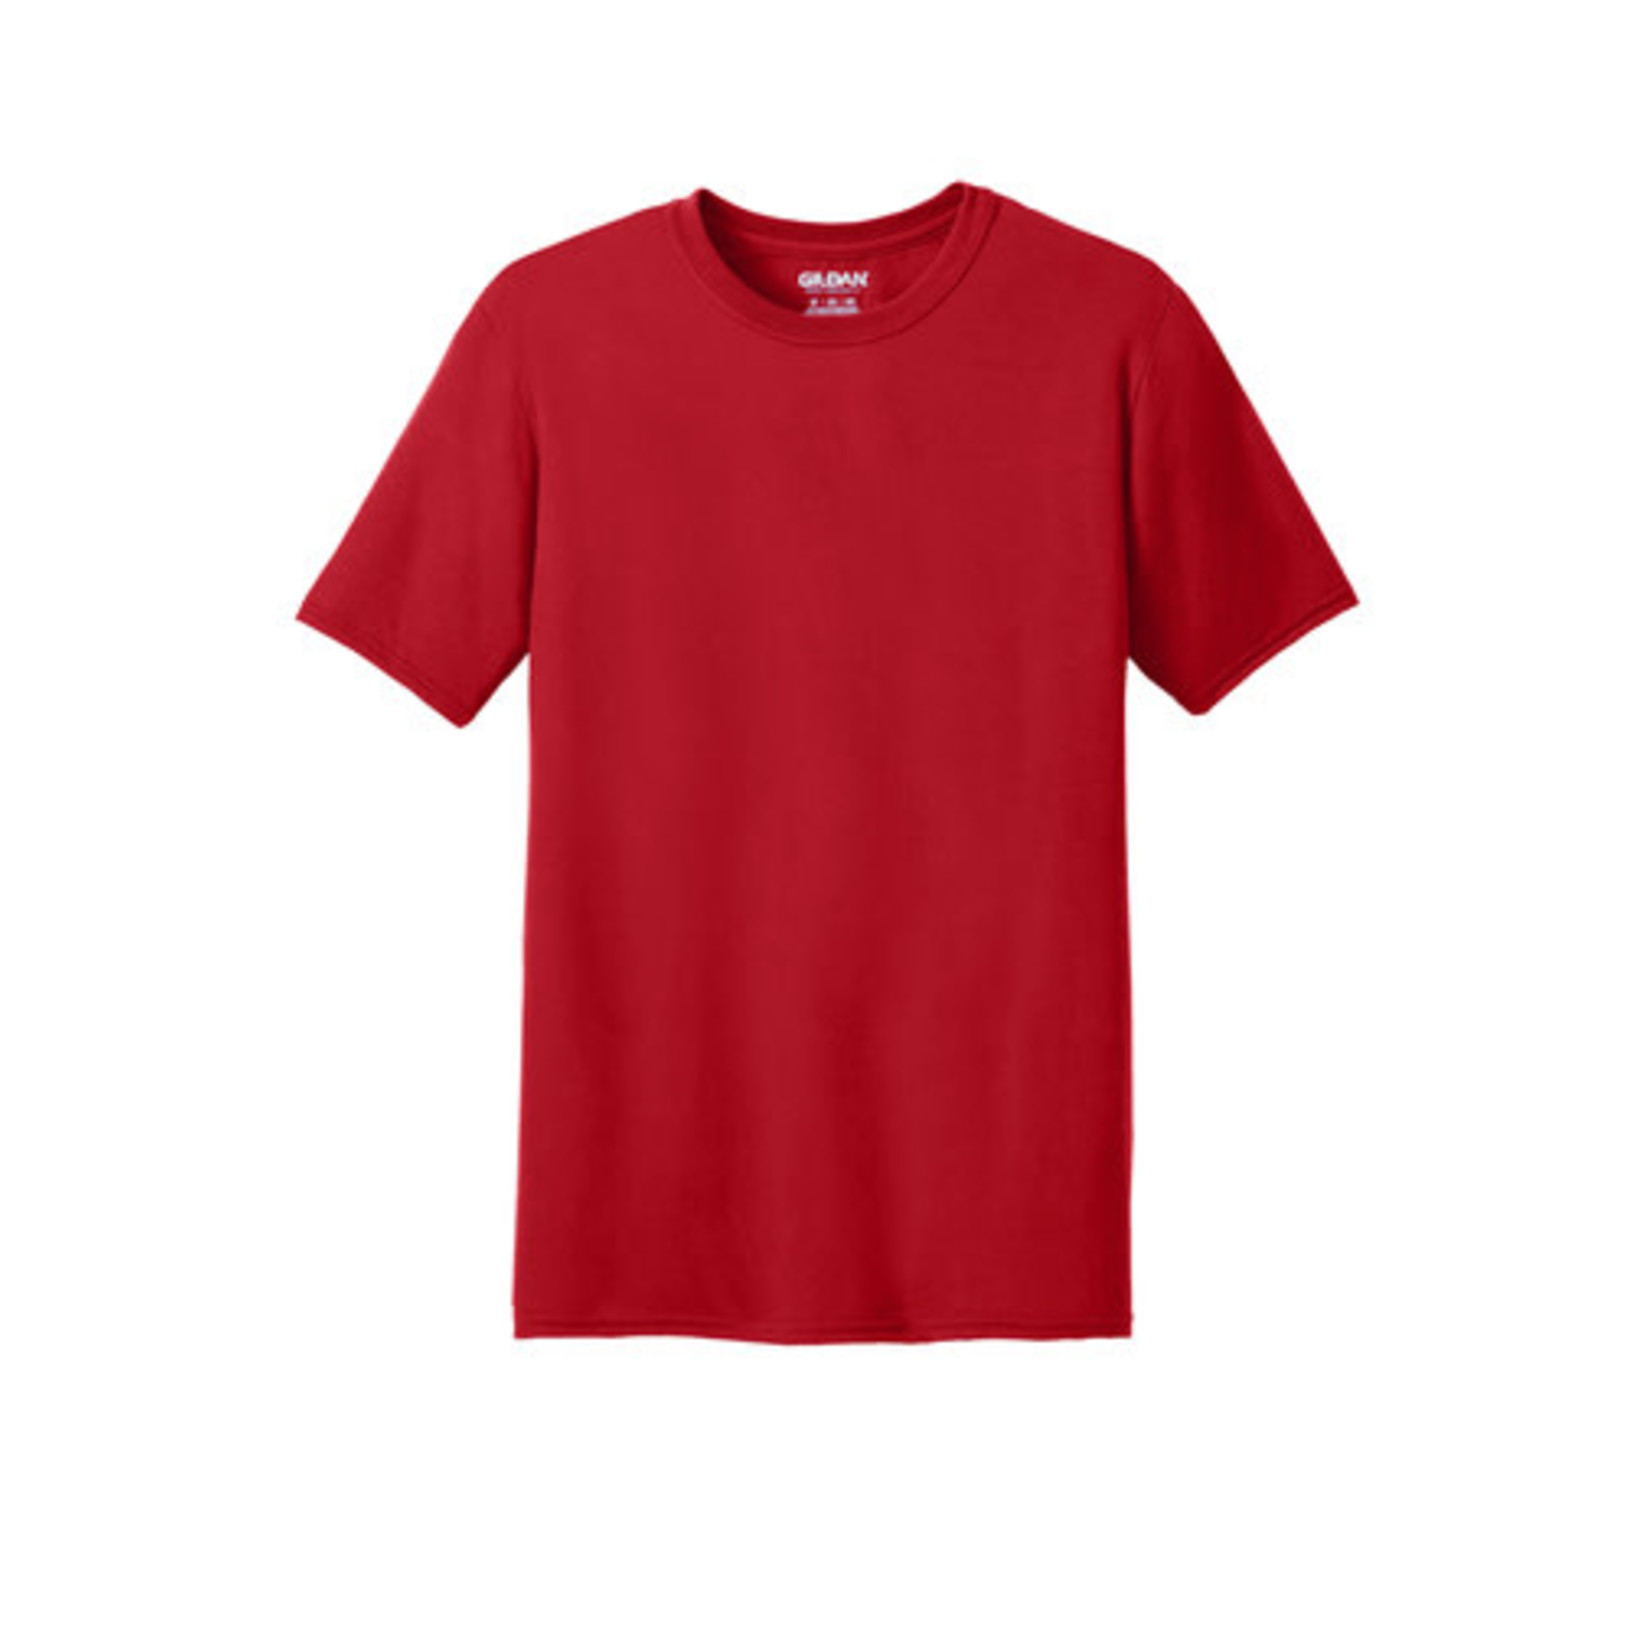 DeRo Gilden Performance T-Shirt - Red